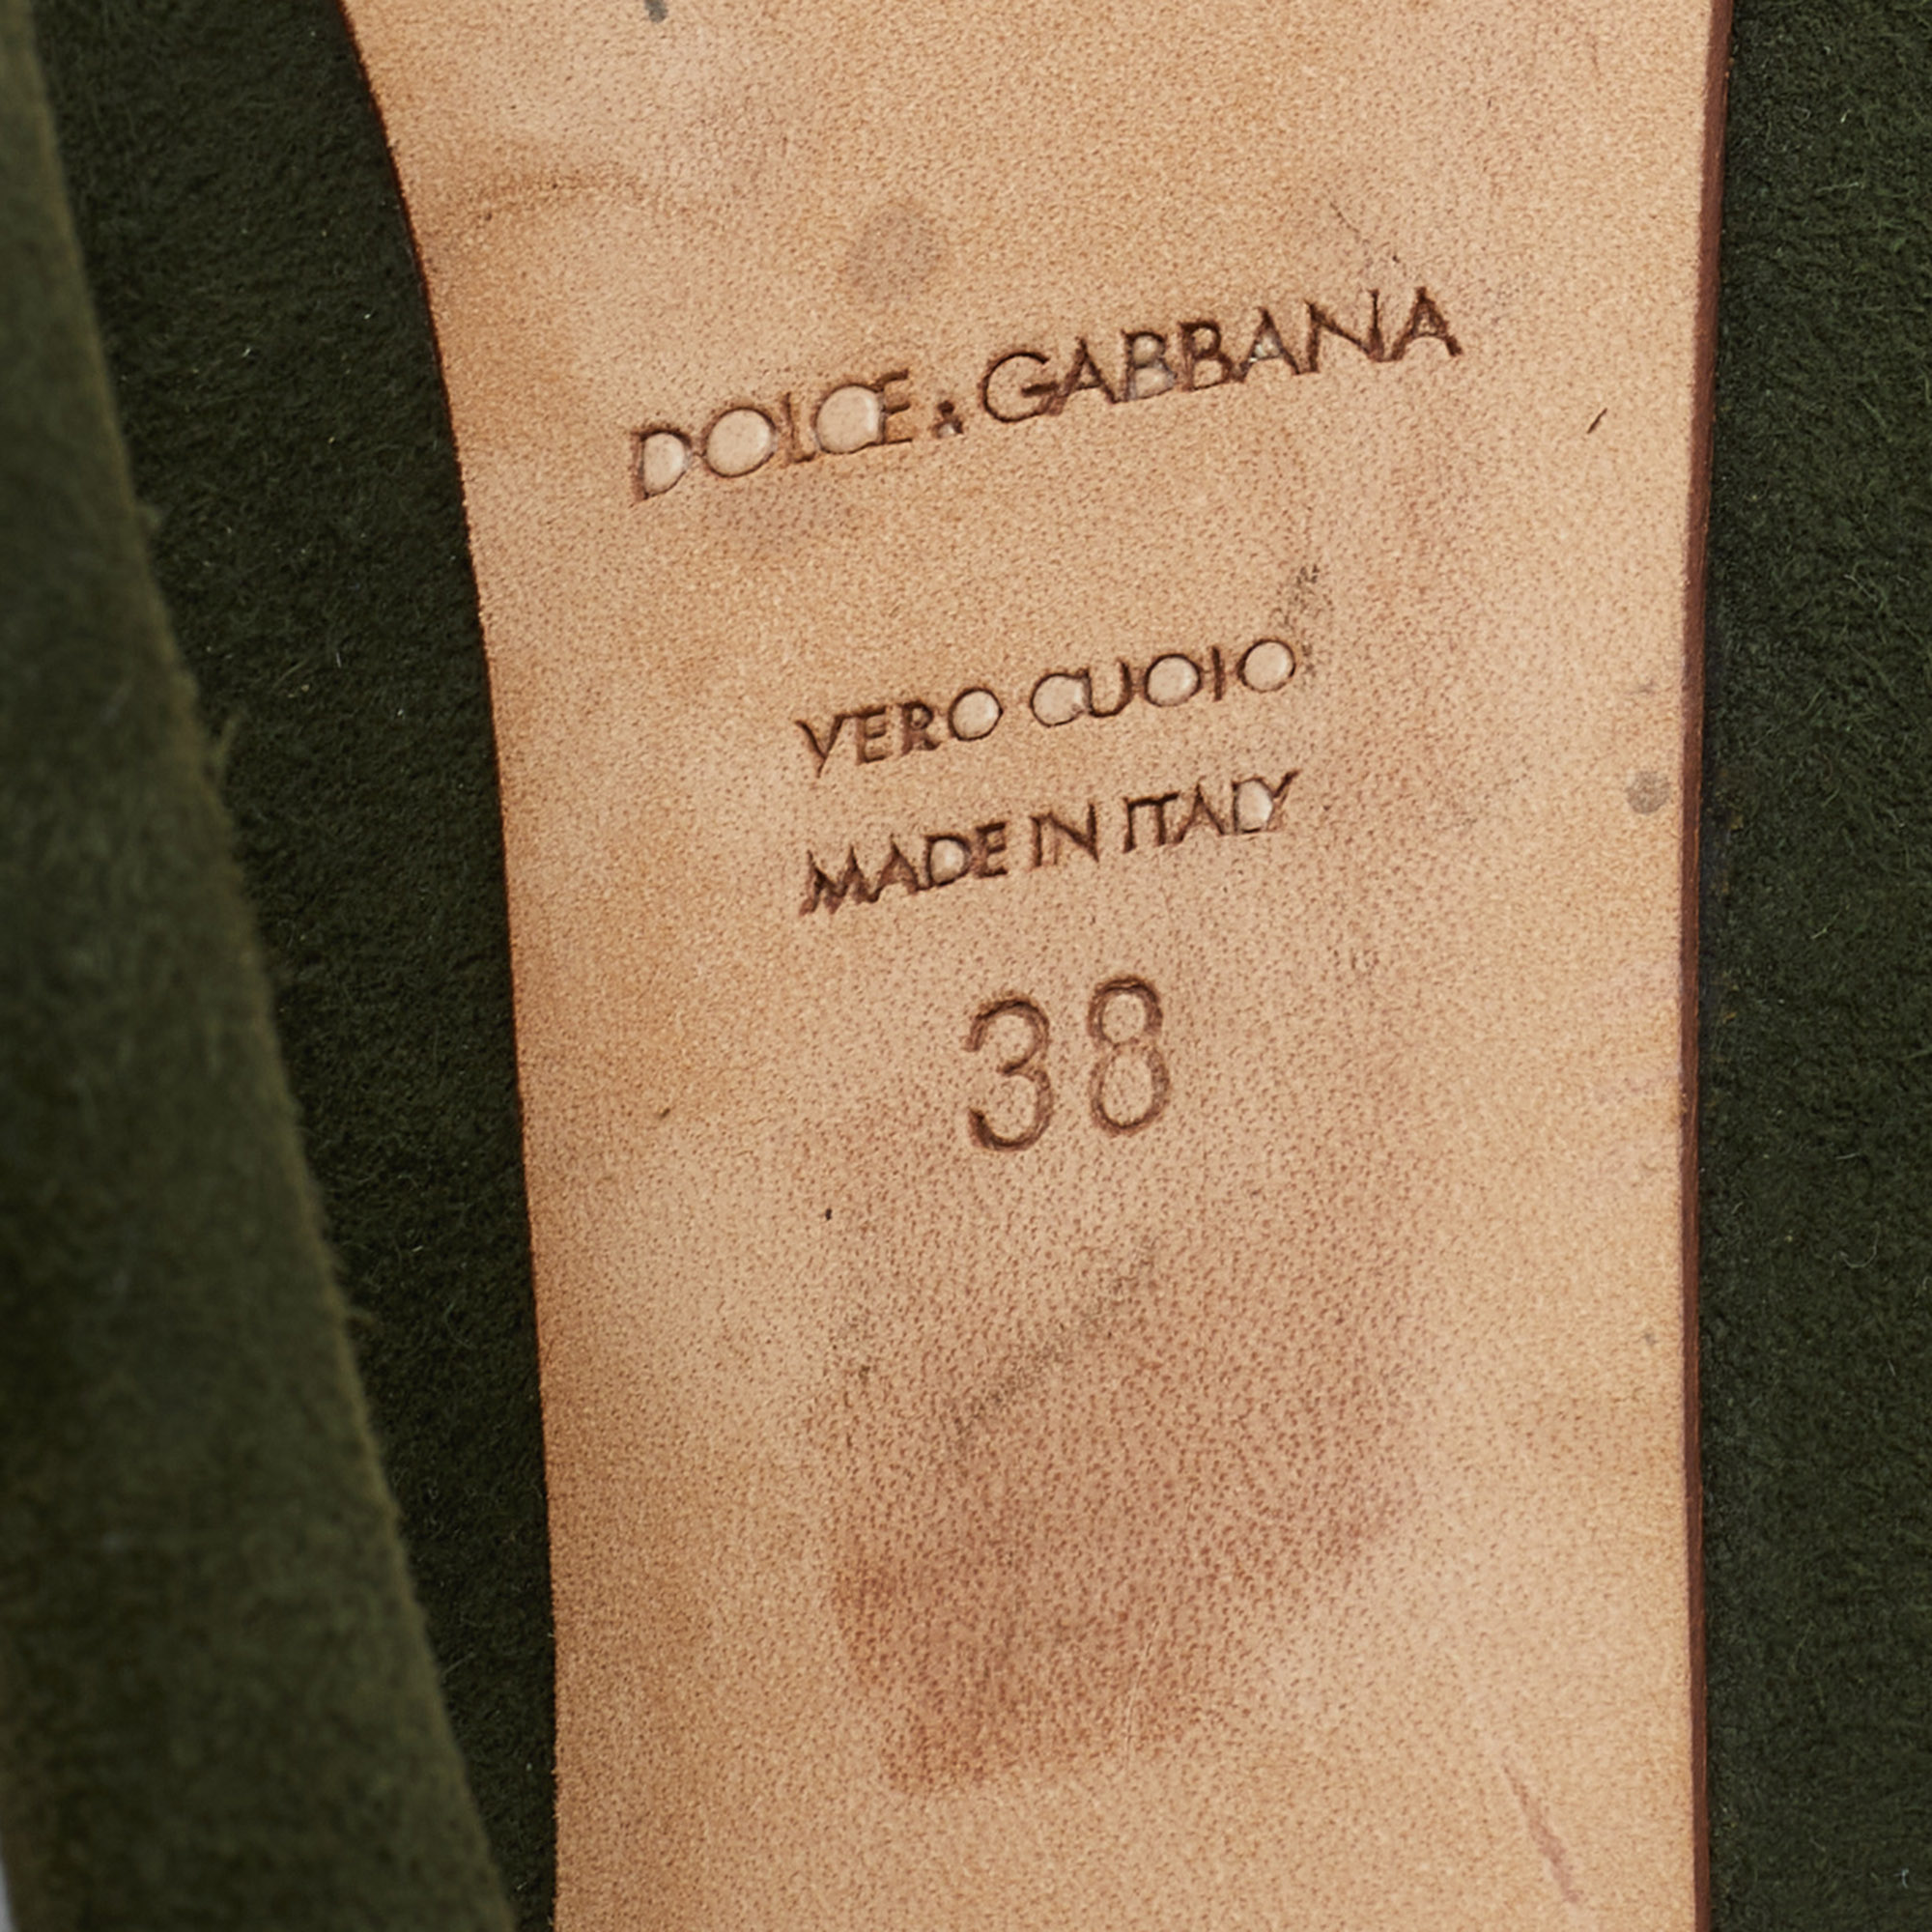 Dolce & Gabbana Green Suede Platform Pumps Size 38